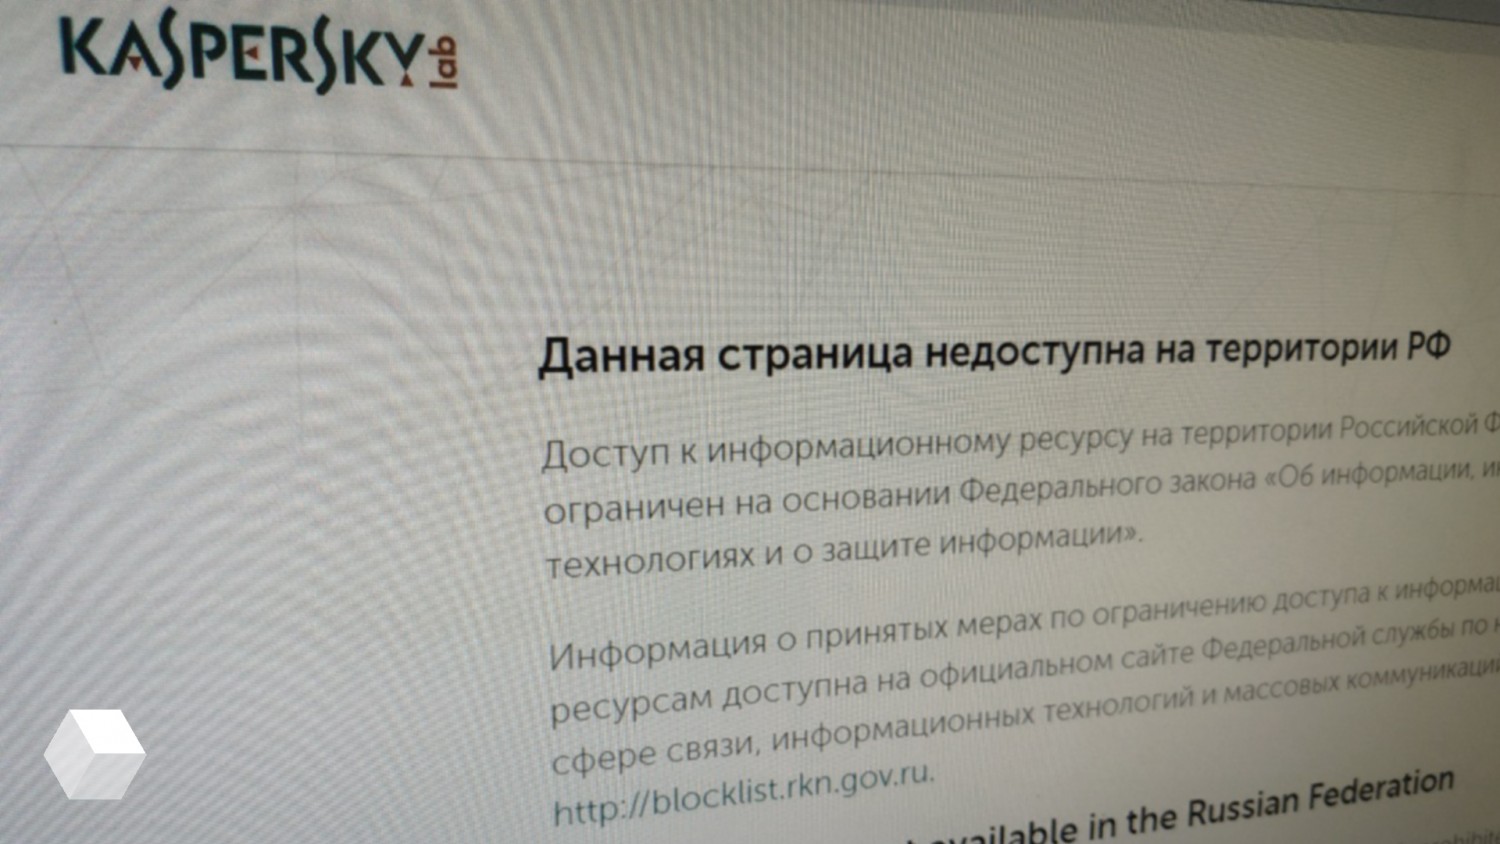 Когда запретят впн. Доступ к сайту запрещен лаборатории Касперского. Страница недоступна. Впн запретили в России. Список запрещённых VPN В России.